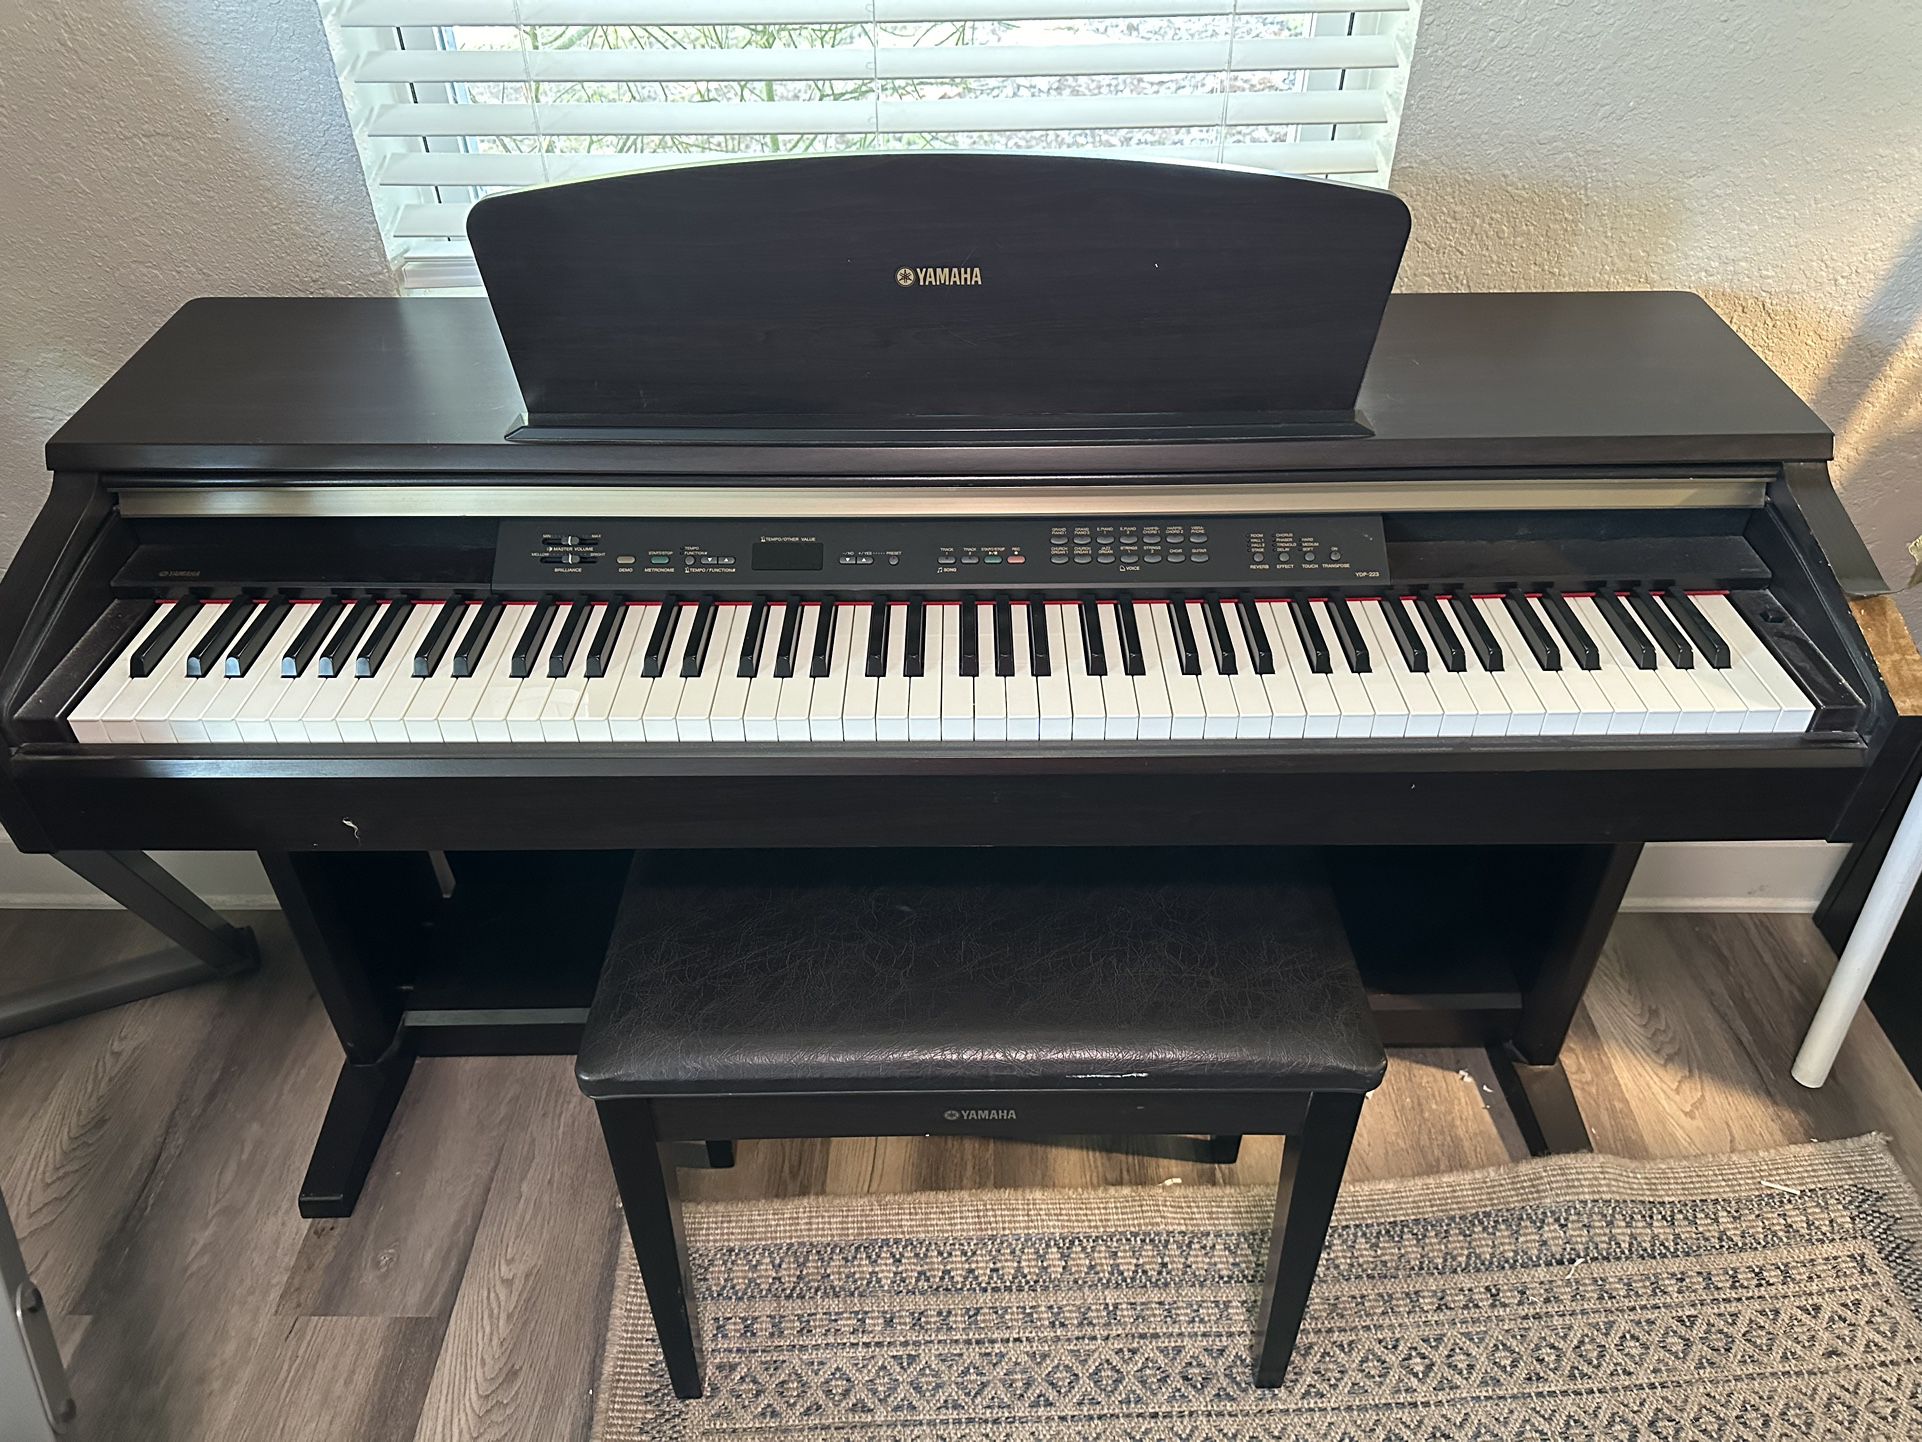 Yamaha Electric Piano With Standard Heavy Piano Keys